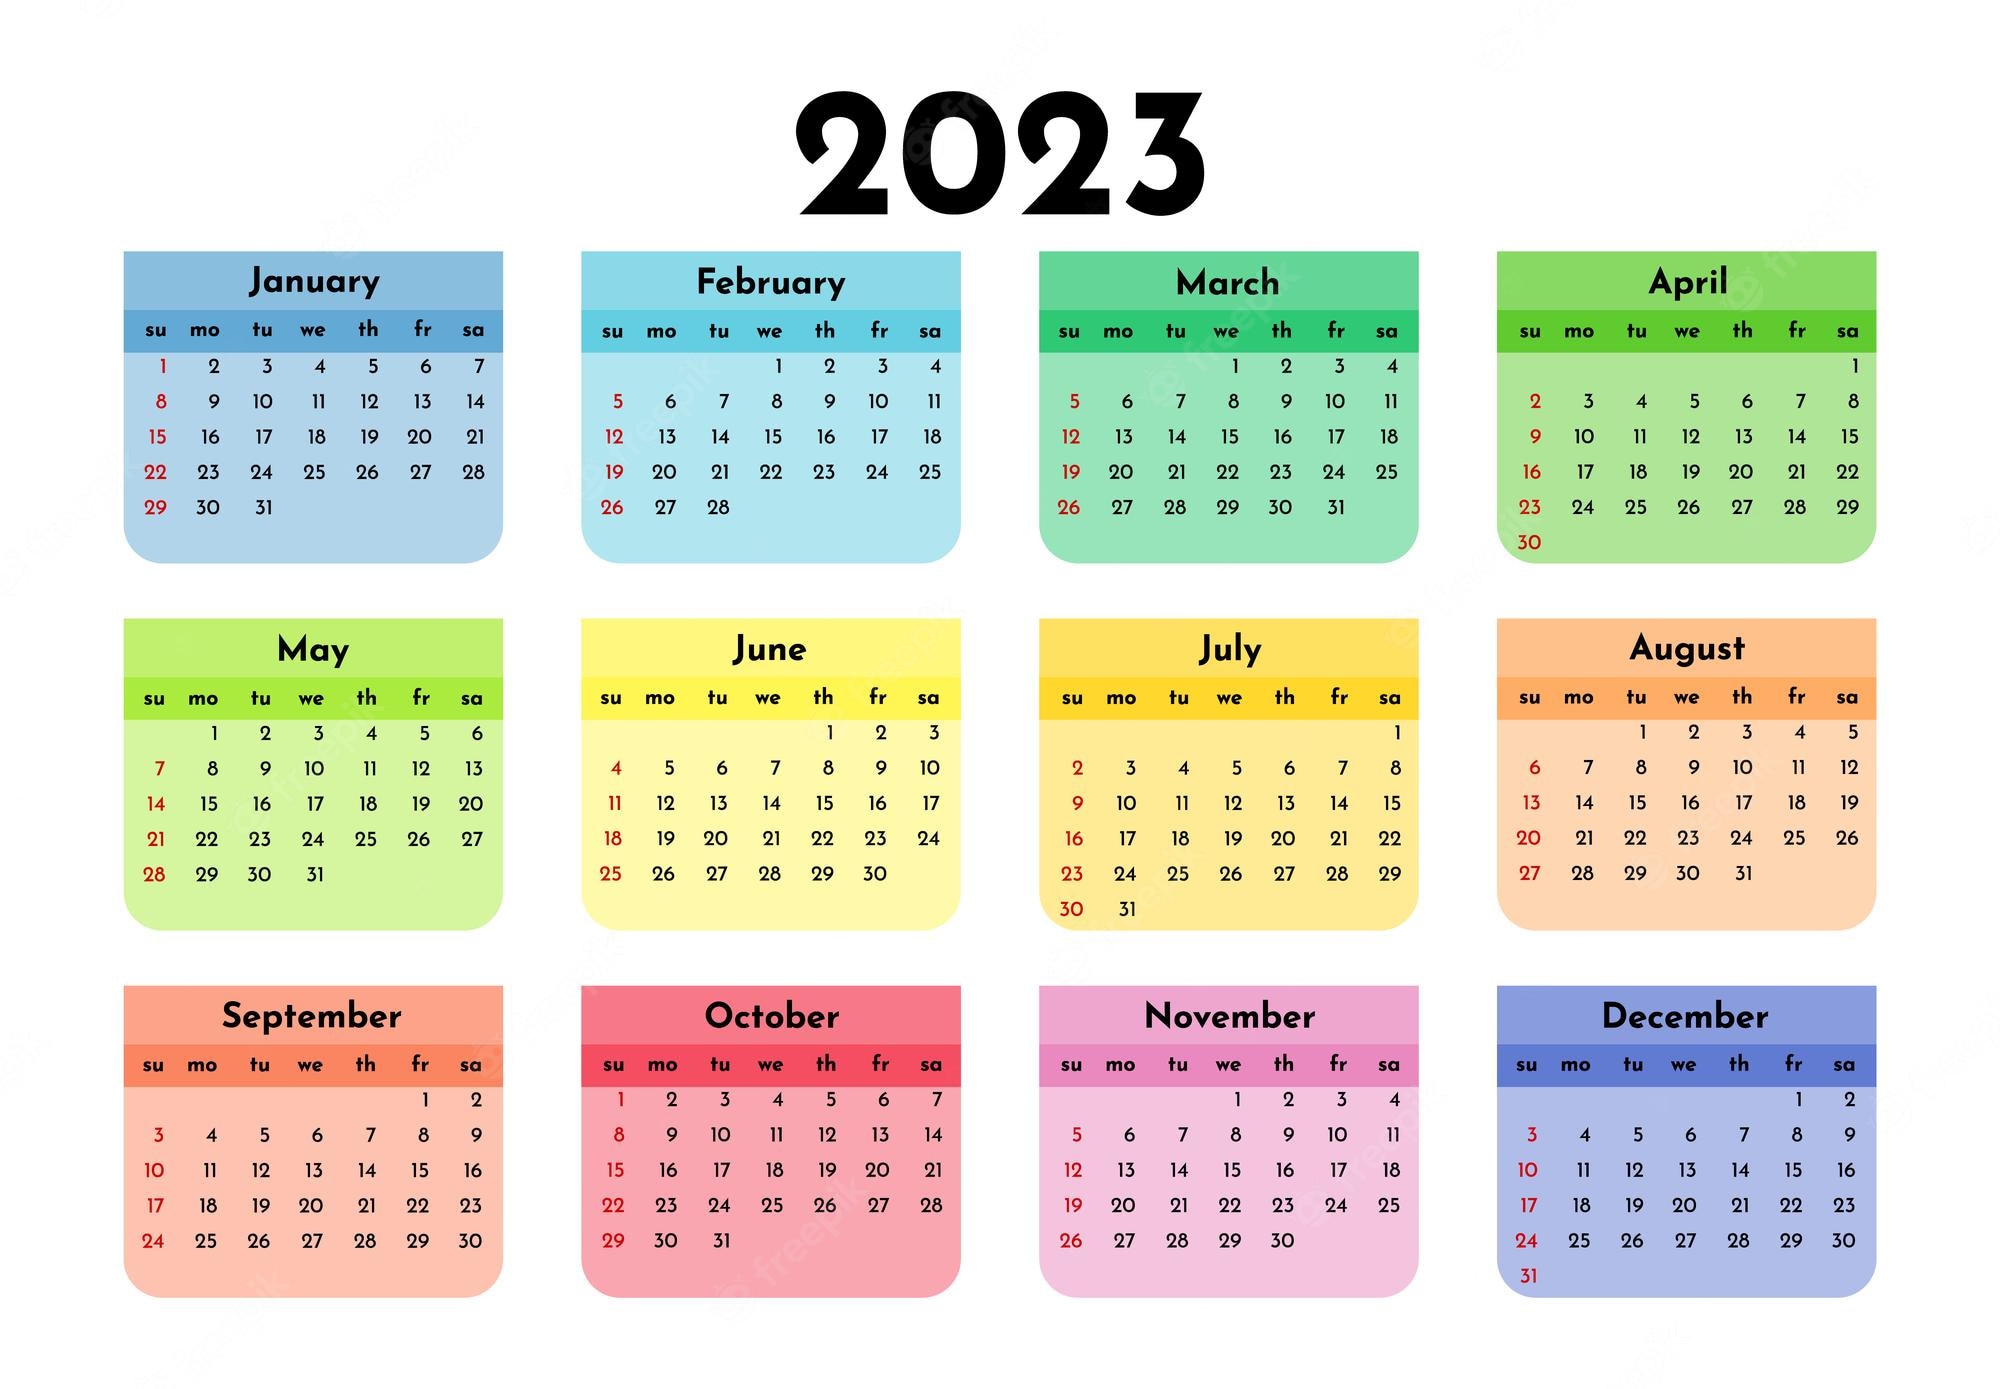 Calendar 2023 Image. Free Vectors, & PSD